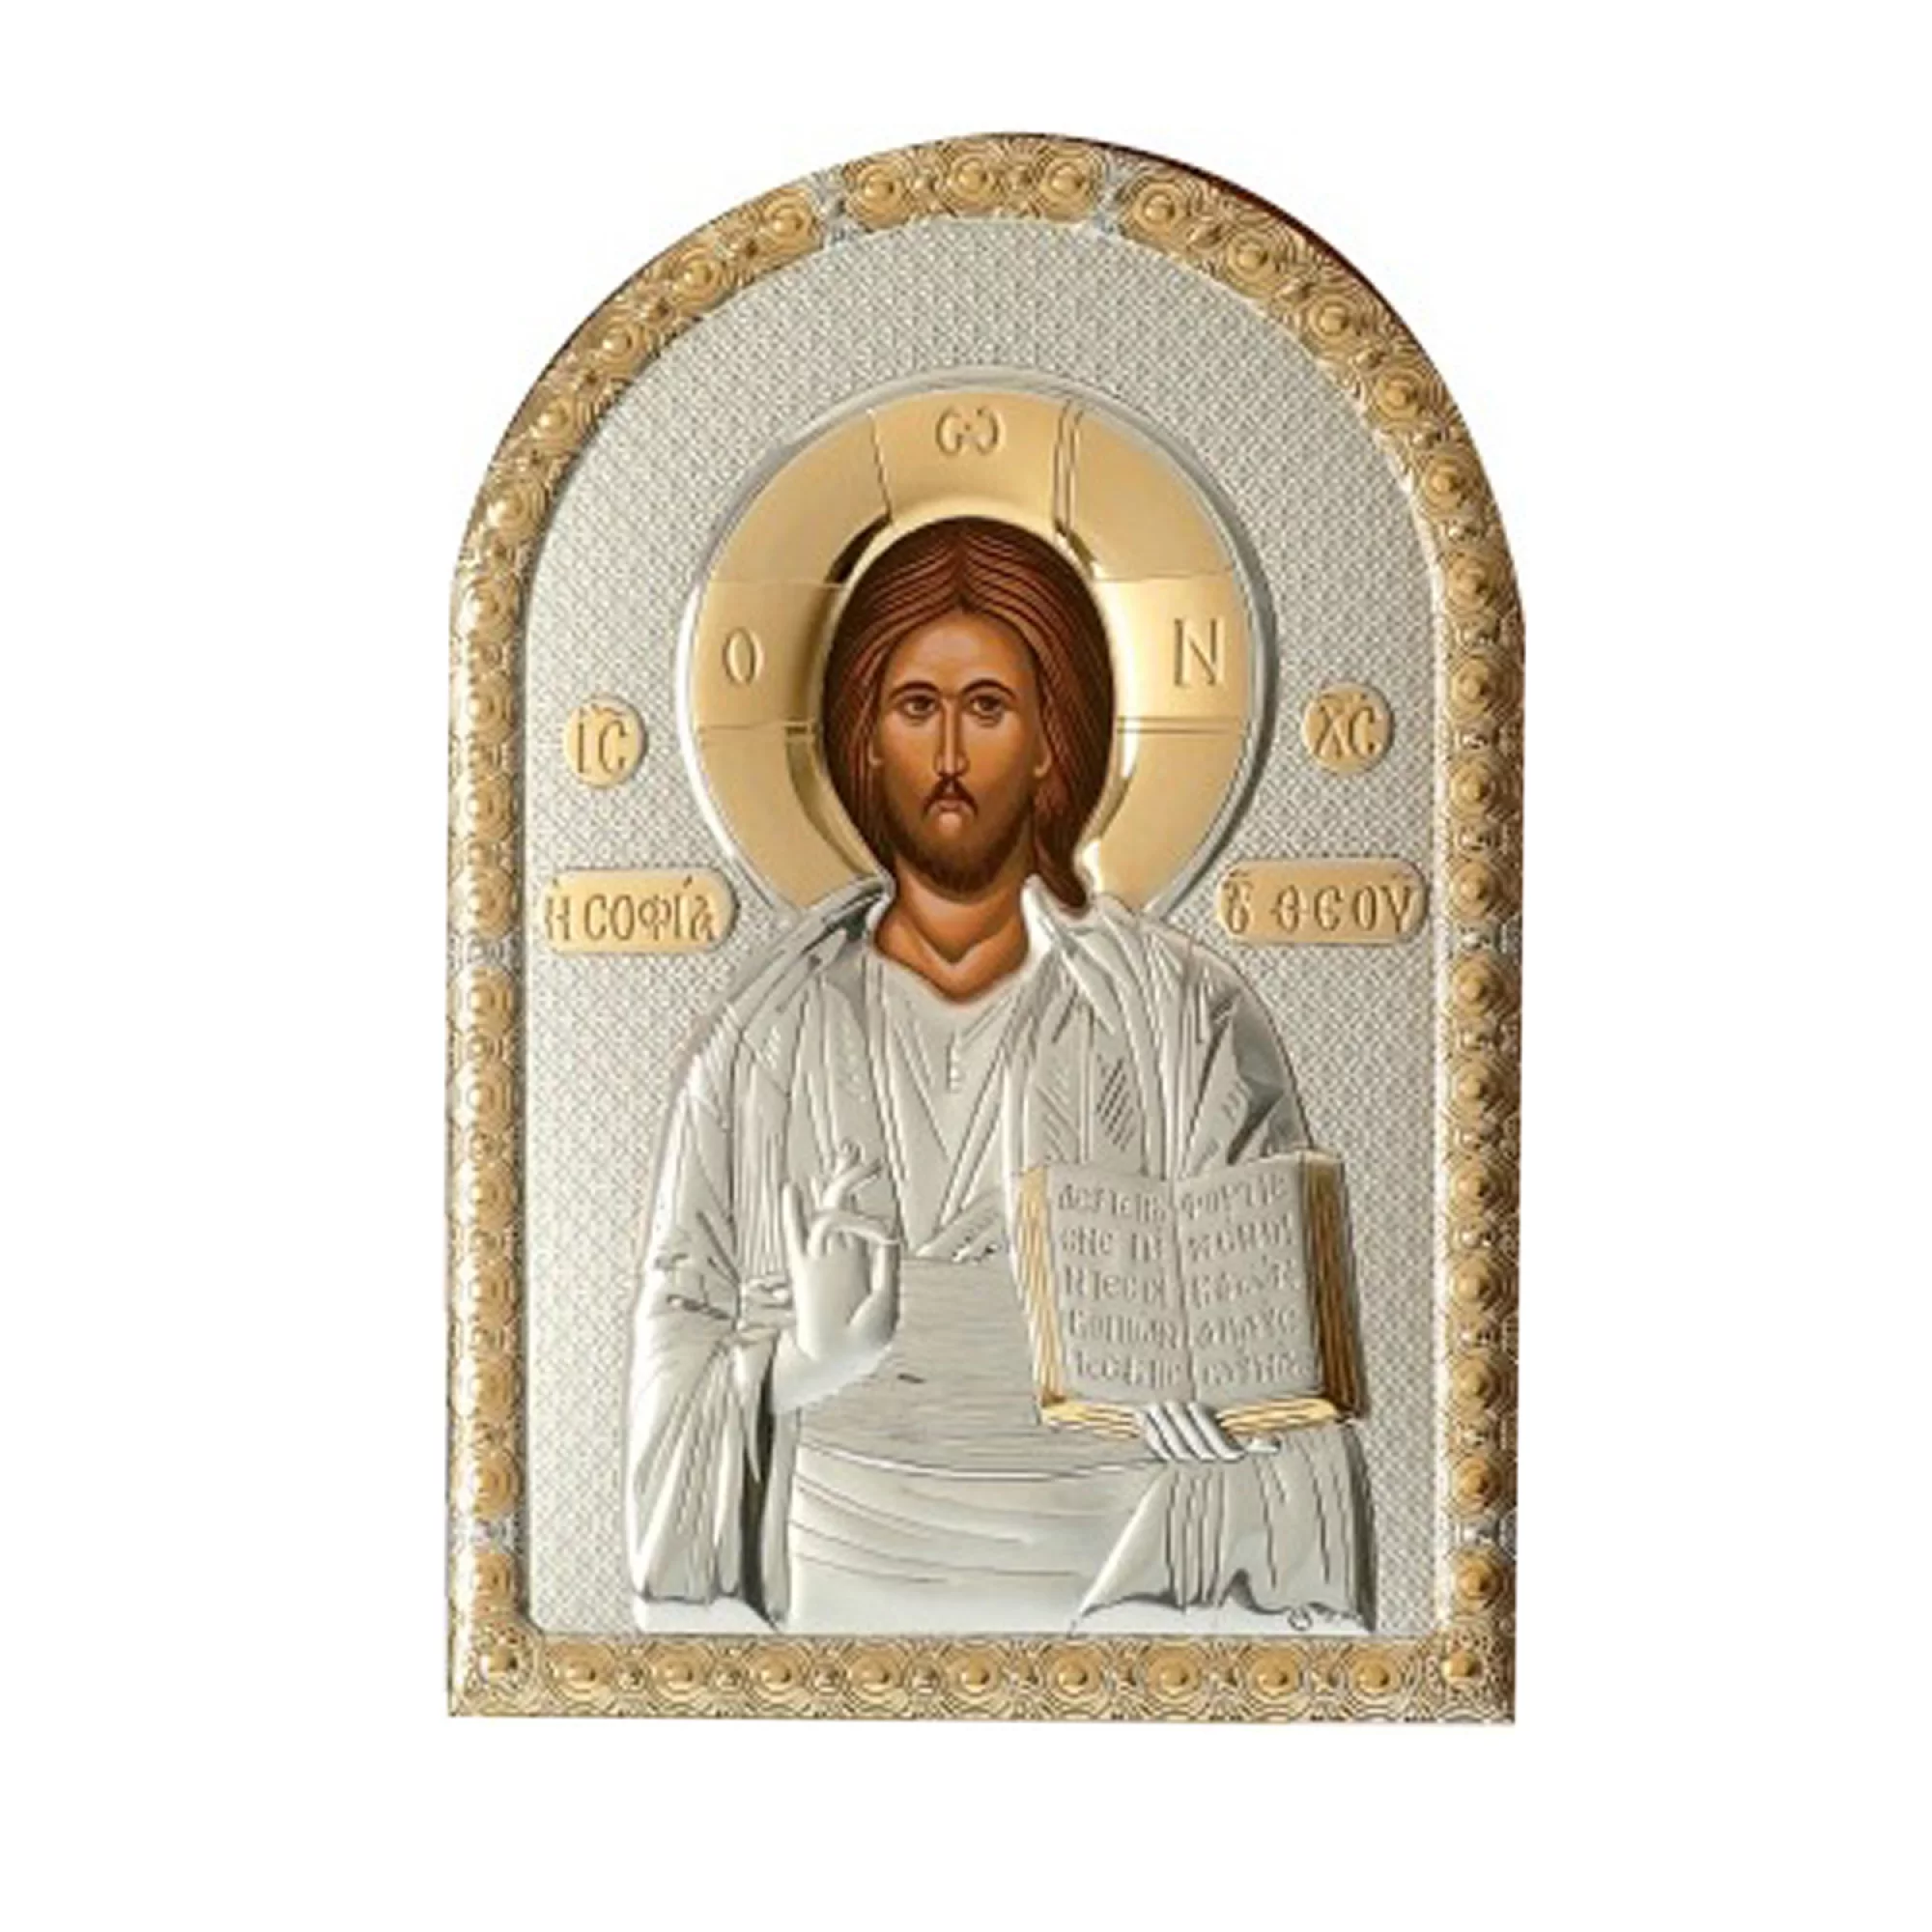 Серебряная икона "Иисус Христос" с позолотой - 1592605 – изображение 1